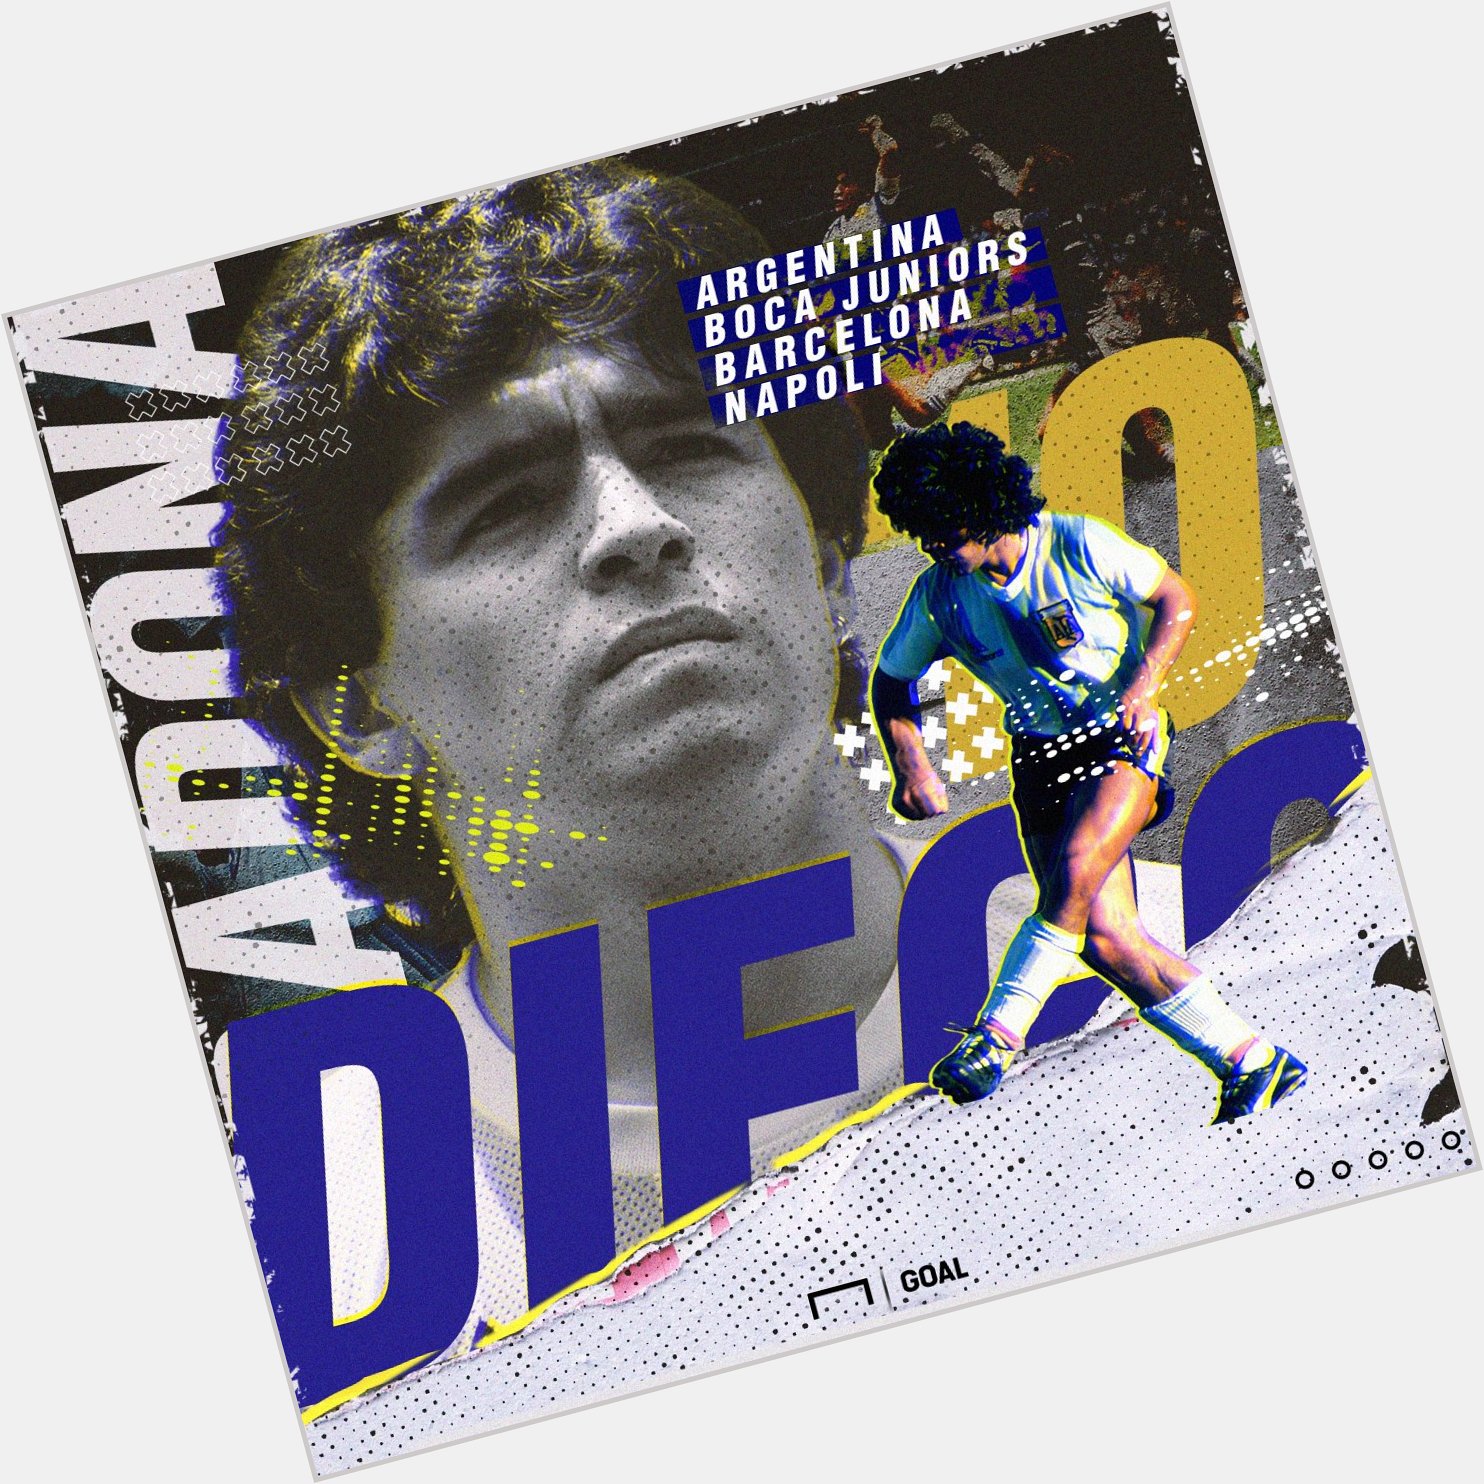 Happy Birthday Diego Maradona  681 344 10

Legend. 